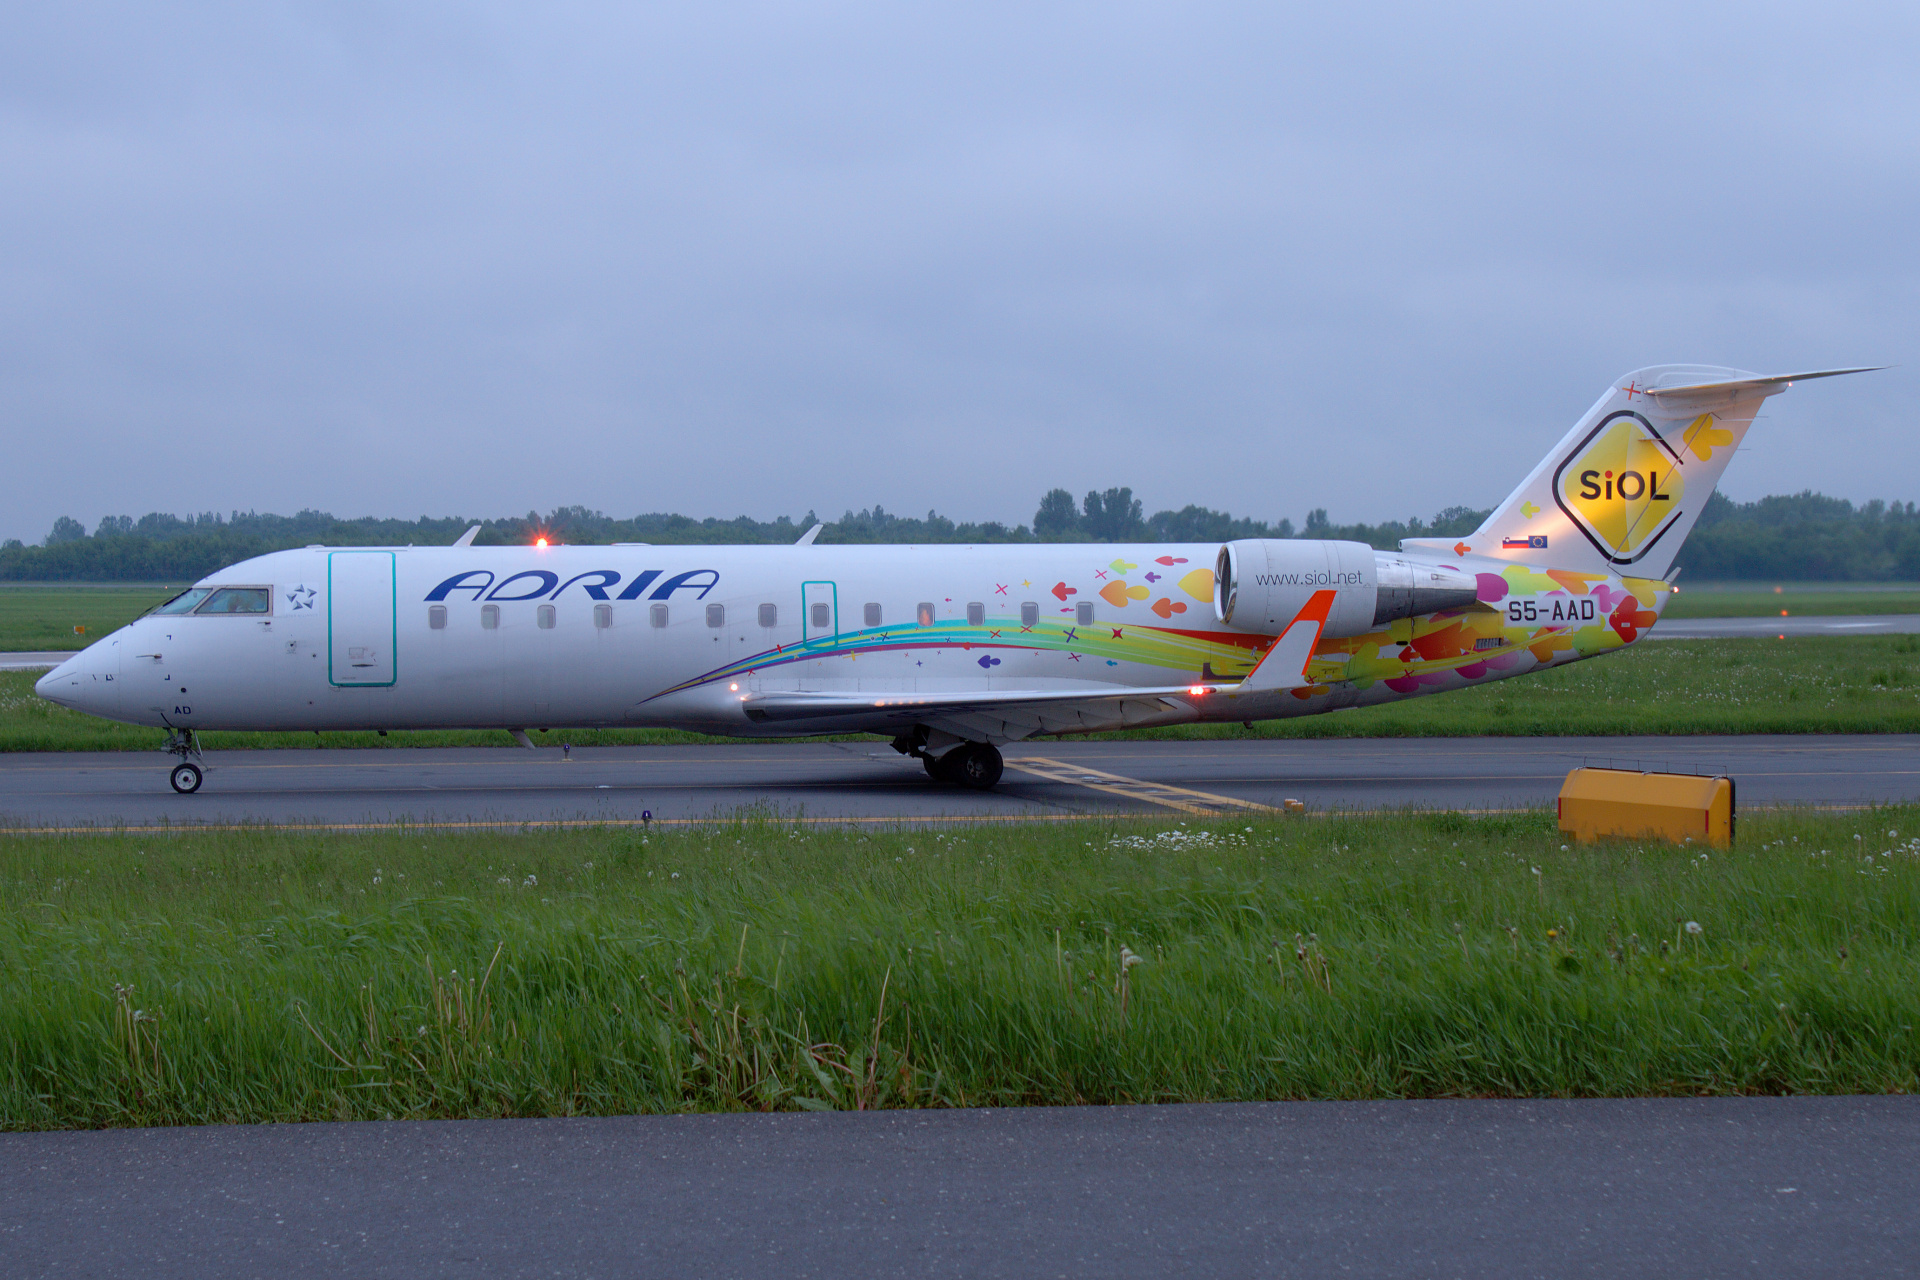 S5-AAD (malowanie Siol) (Samoloty » Spotting na EPWA » Bombardier CL-600 Regional Jet » CRJ-200 » Adria Airways)